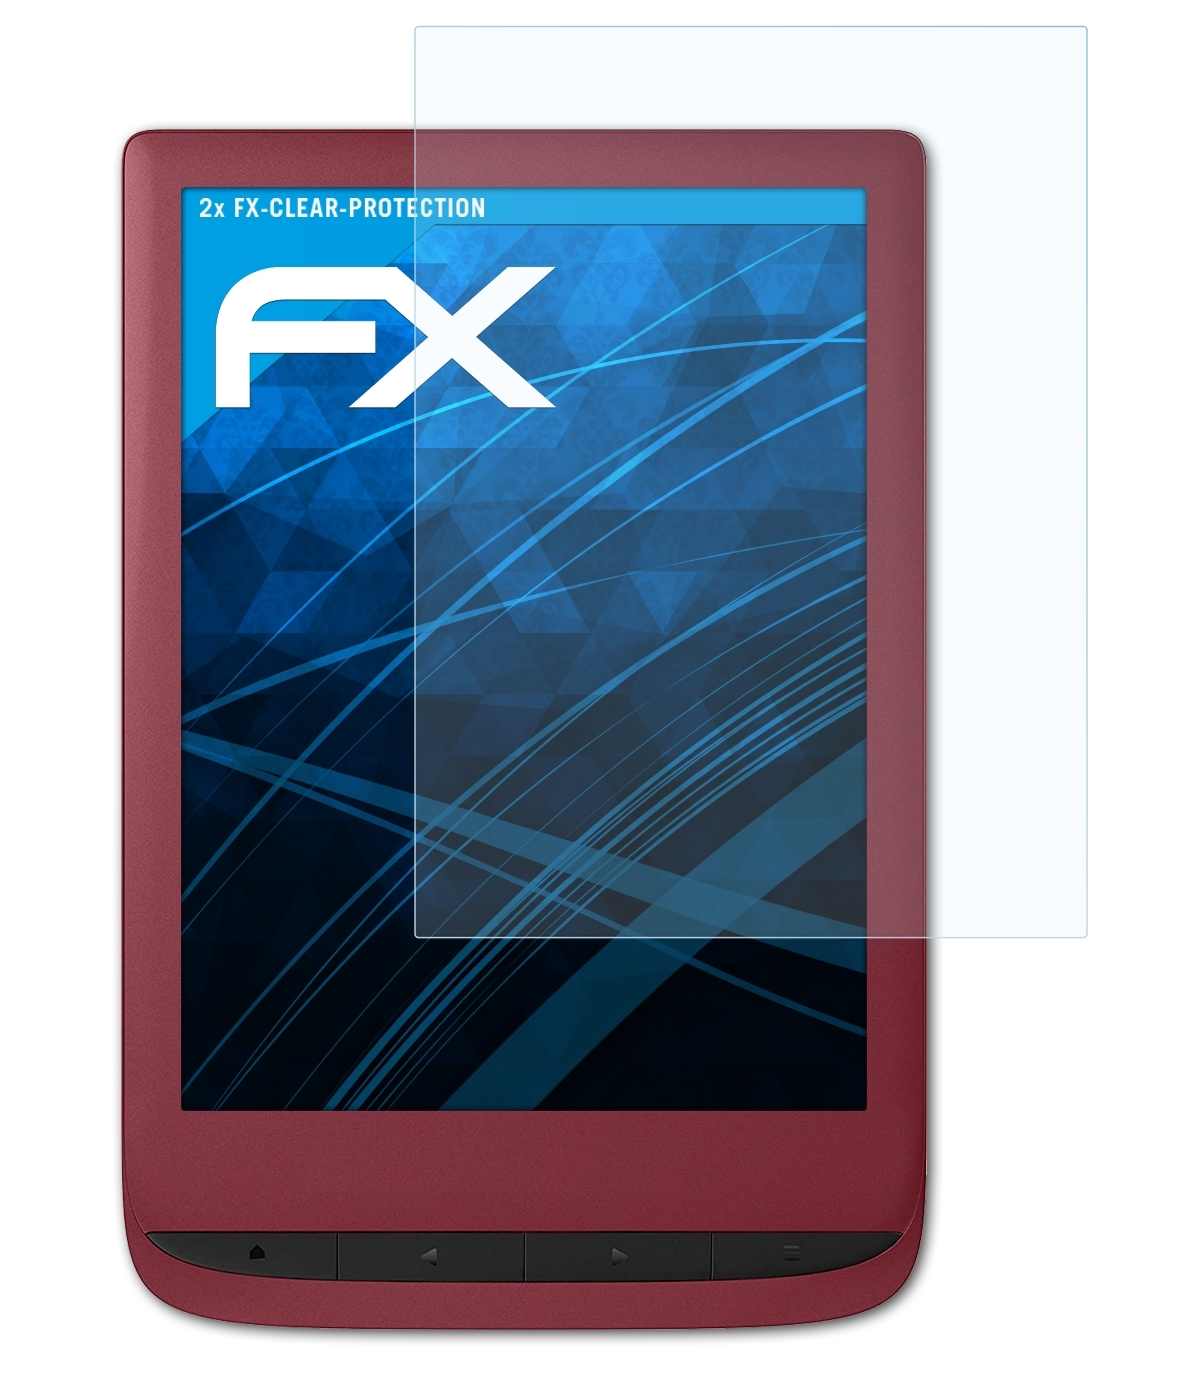 ATFOLIX 2x 5) Touch Lux PocketBook FX-Clear Displayschutz(für